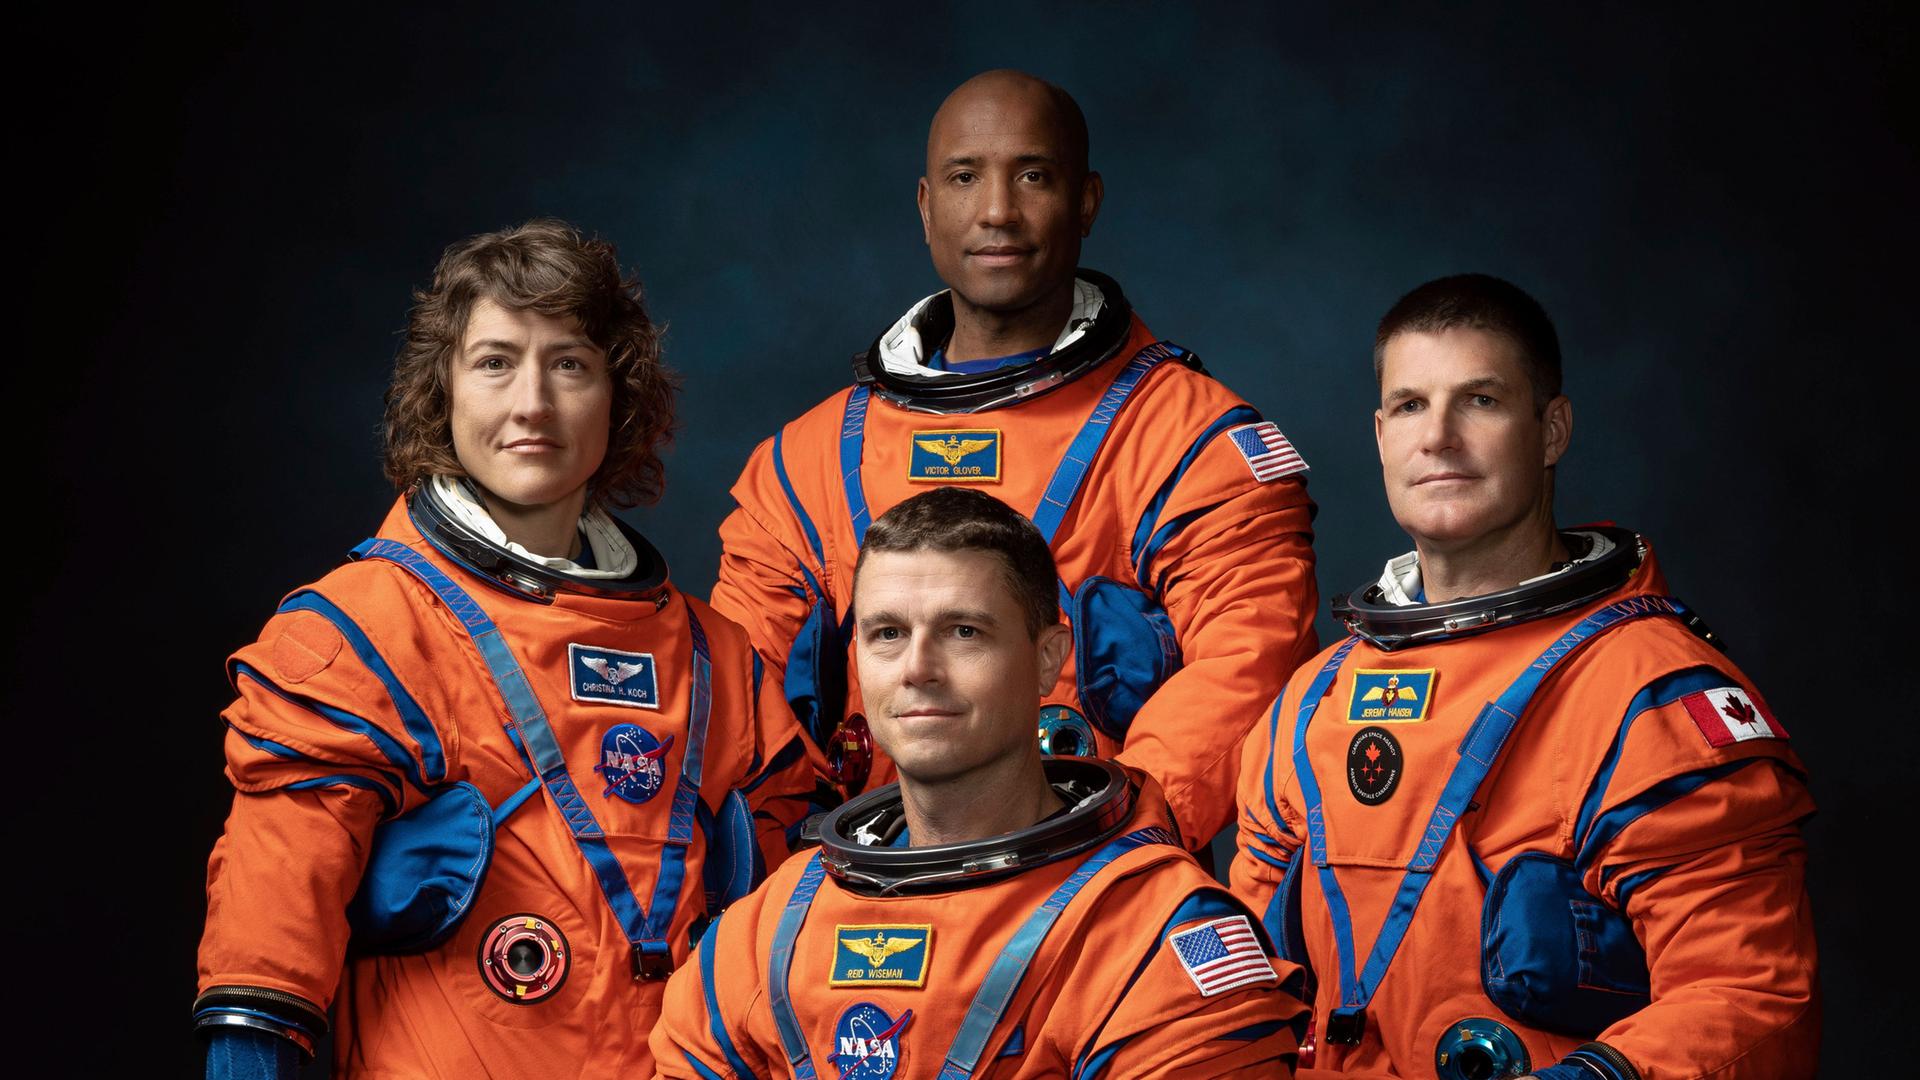 Das Foto zeigt die Crew der Mondmission "Artemis II" in orangefarbenen Raumanzügen.